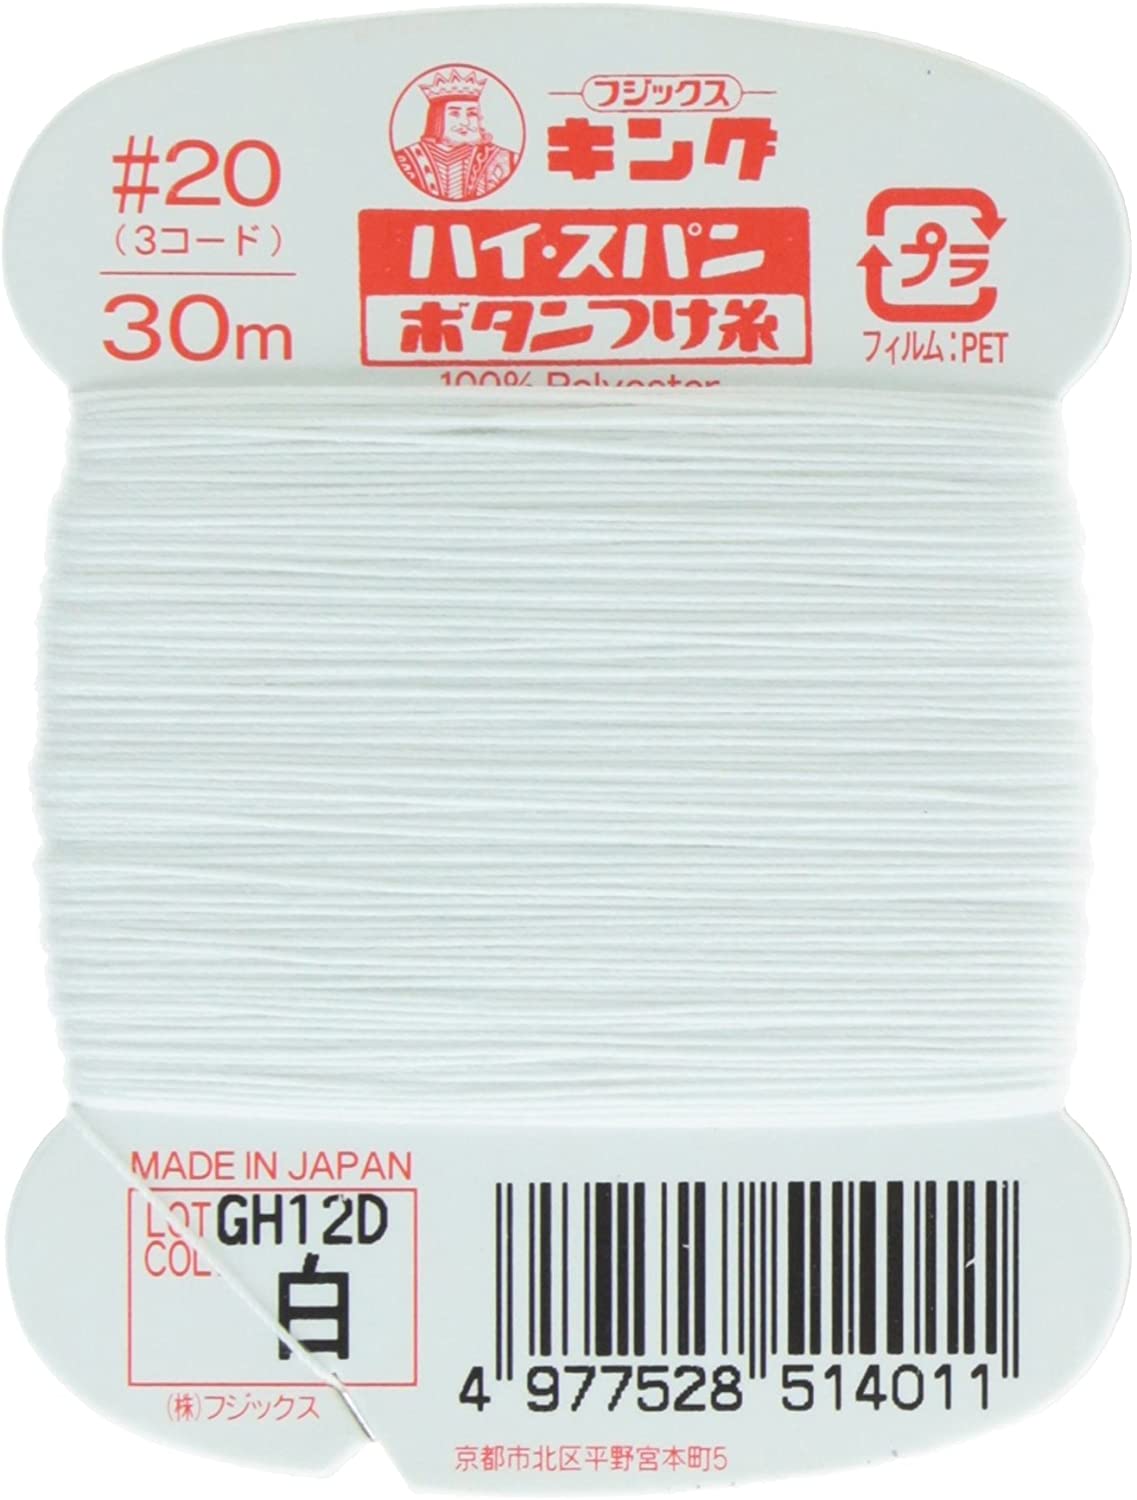 FK51-401 ハイスパンボタンつけ糸 #20 30m巻 (枚)